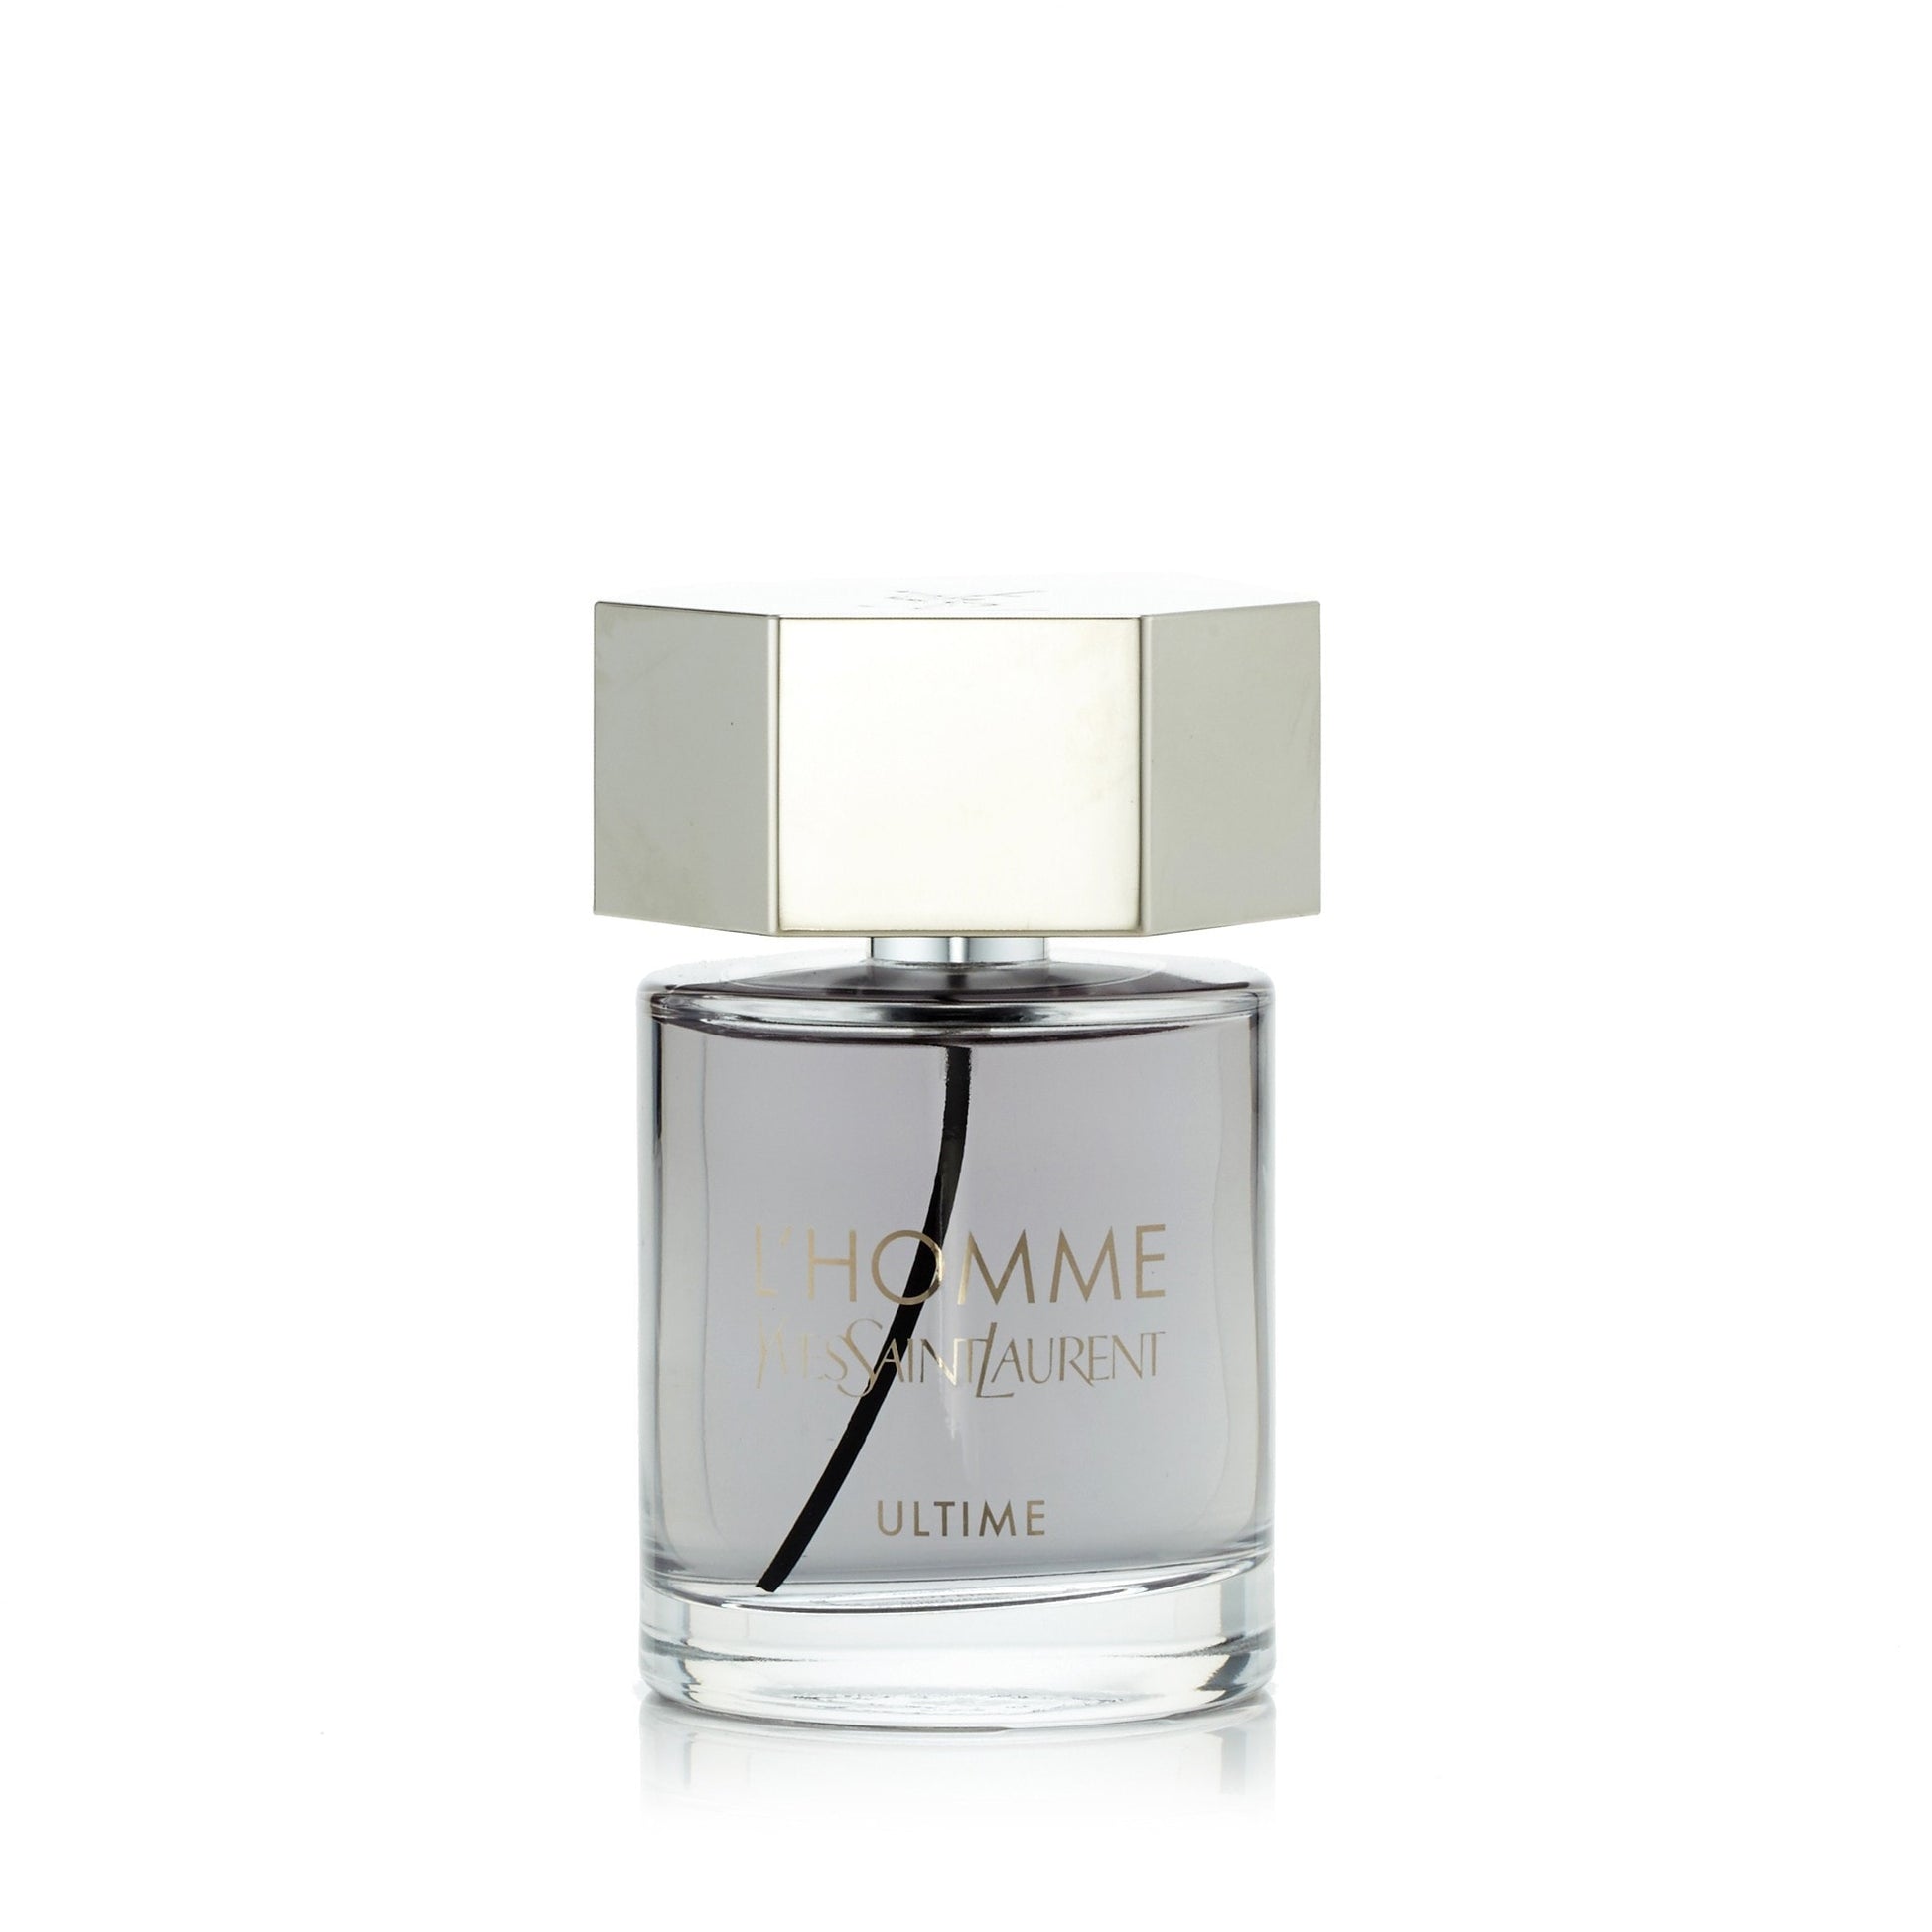 L'Homme Ultime Eau de Parfum Spray for Men by Yves Saint Laurent 3.3 oz. Click to open in modal